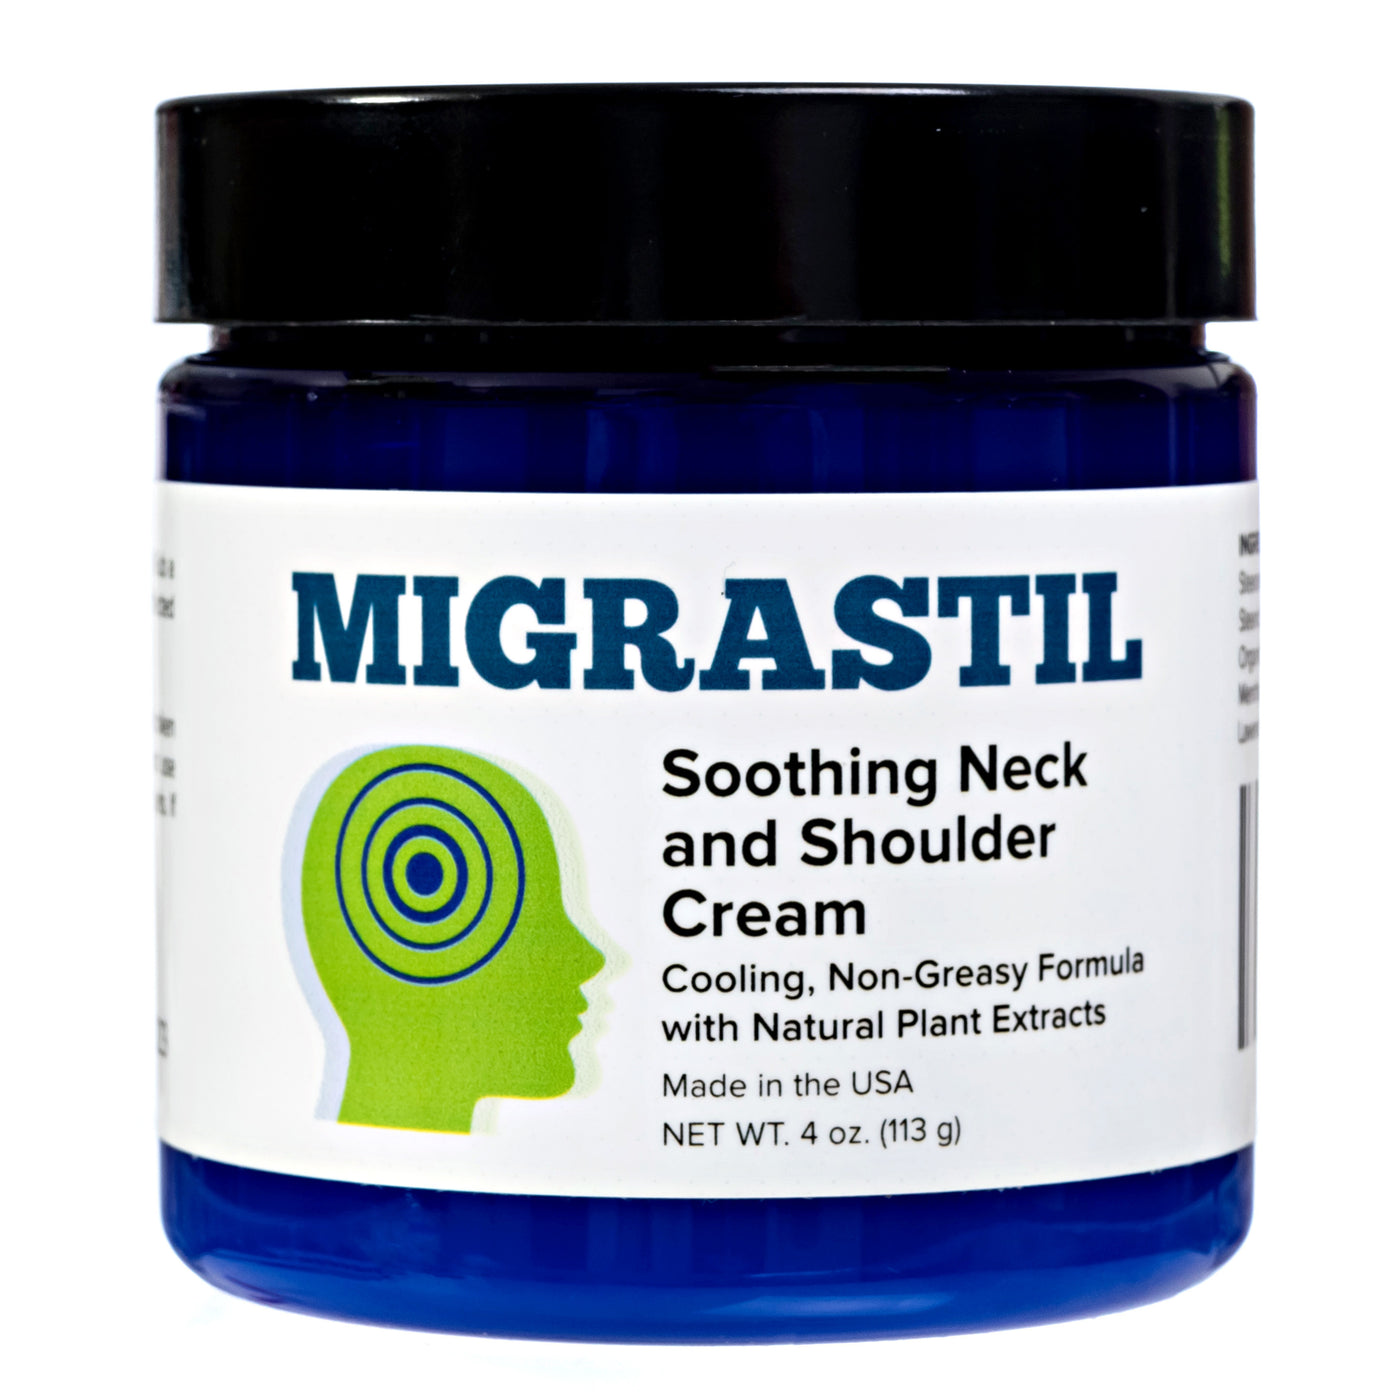 Migrastil Soothing Neck and Shoulder Cream